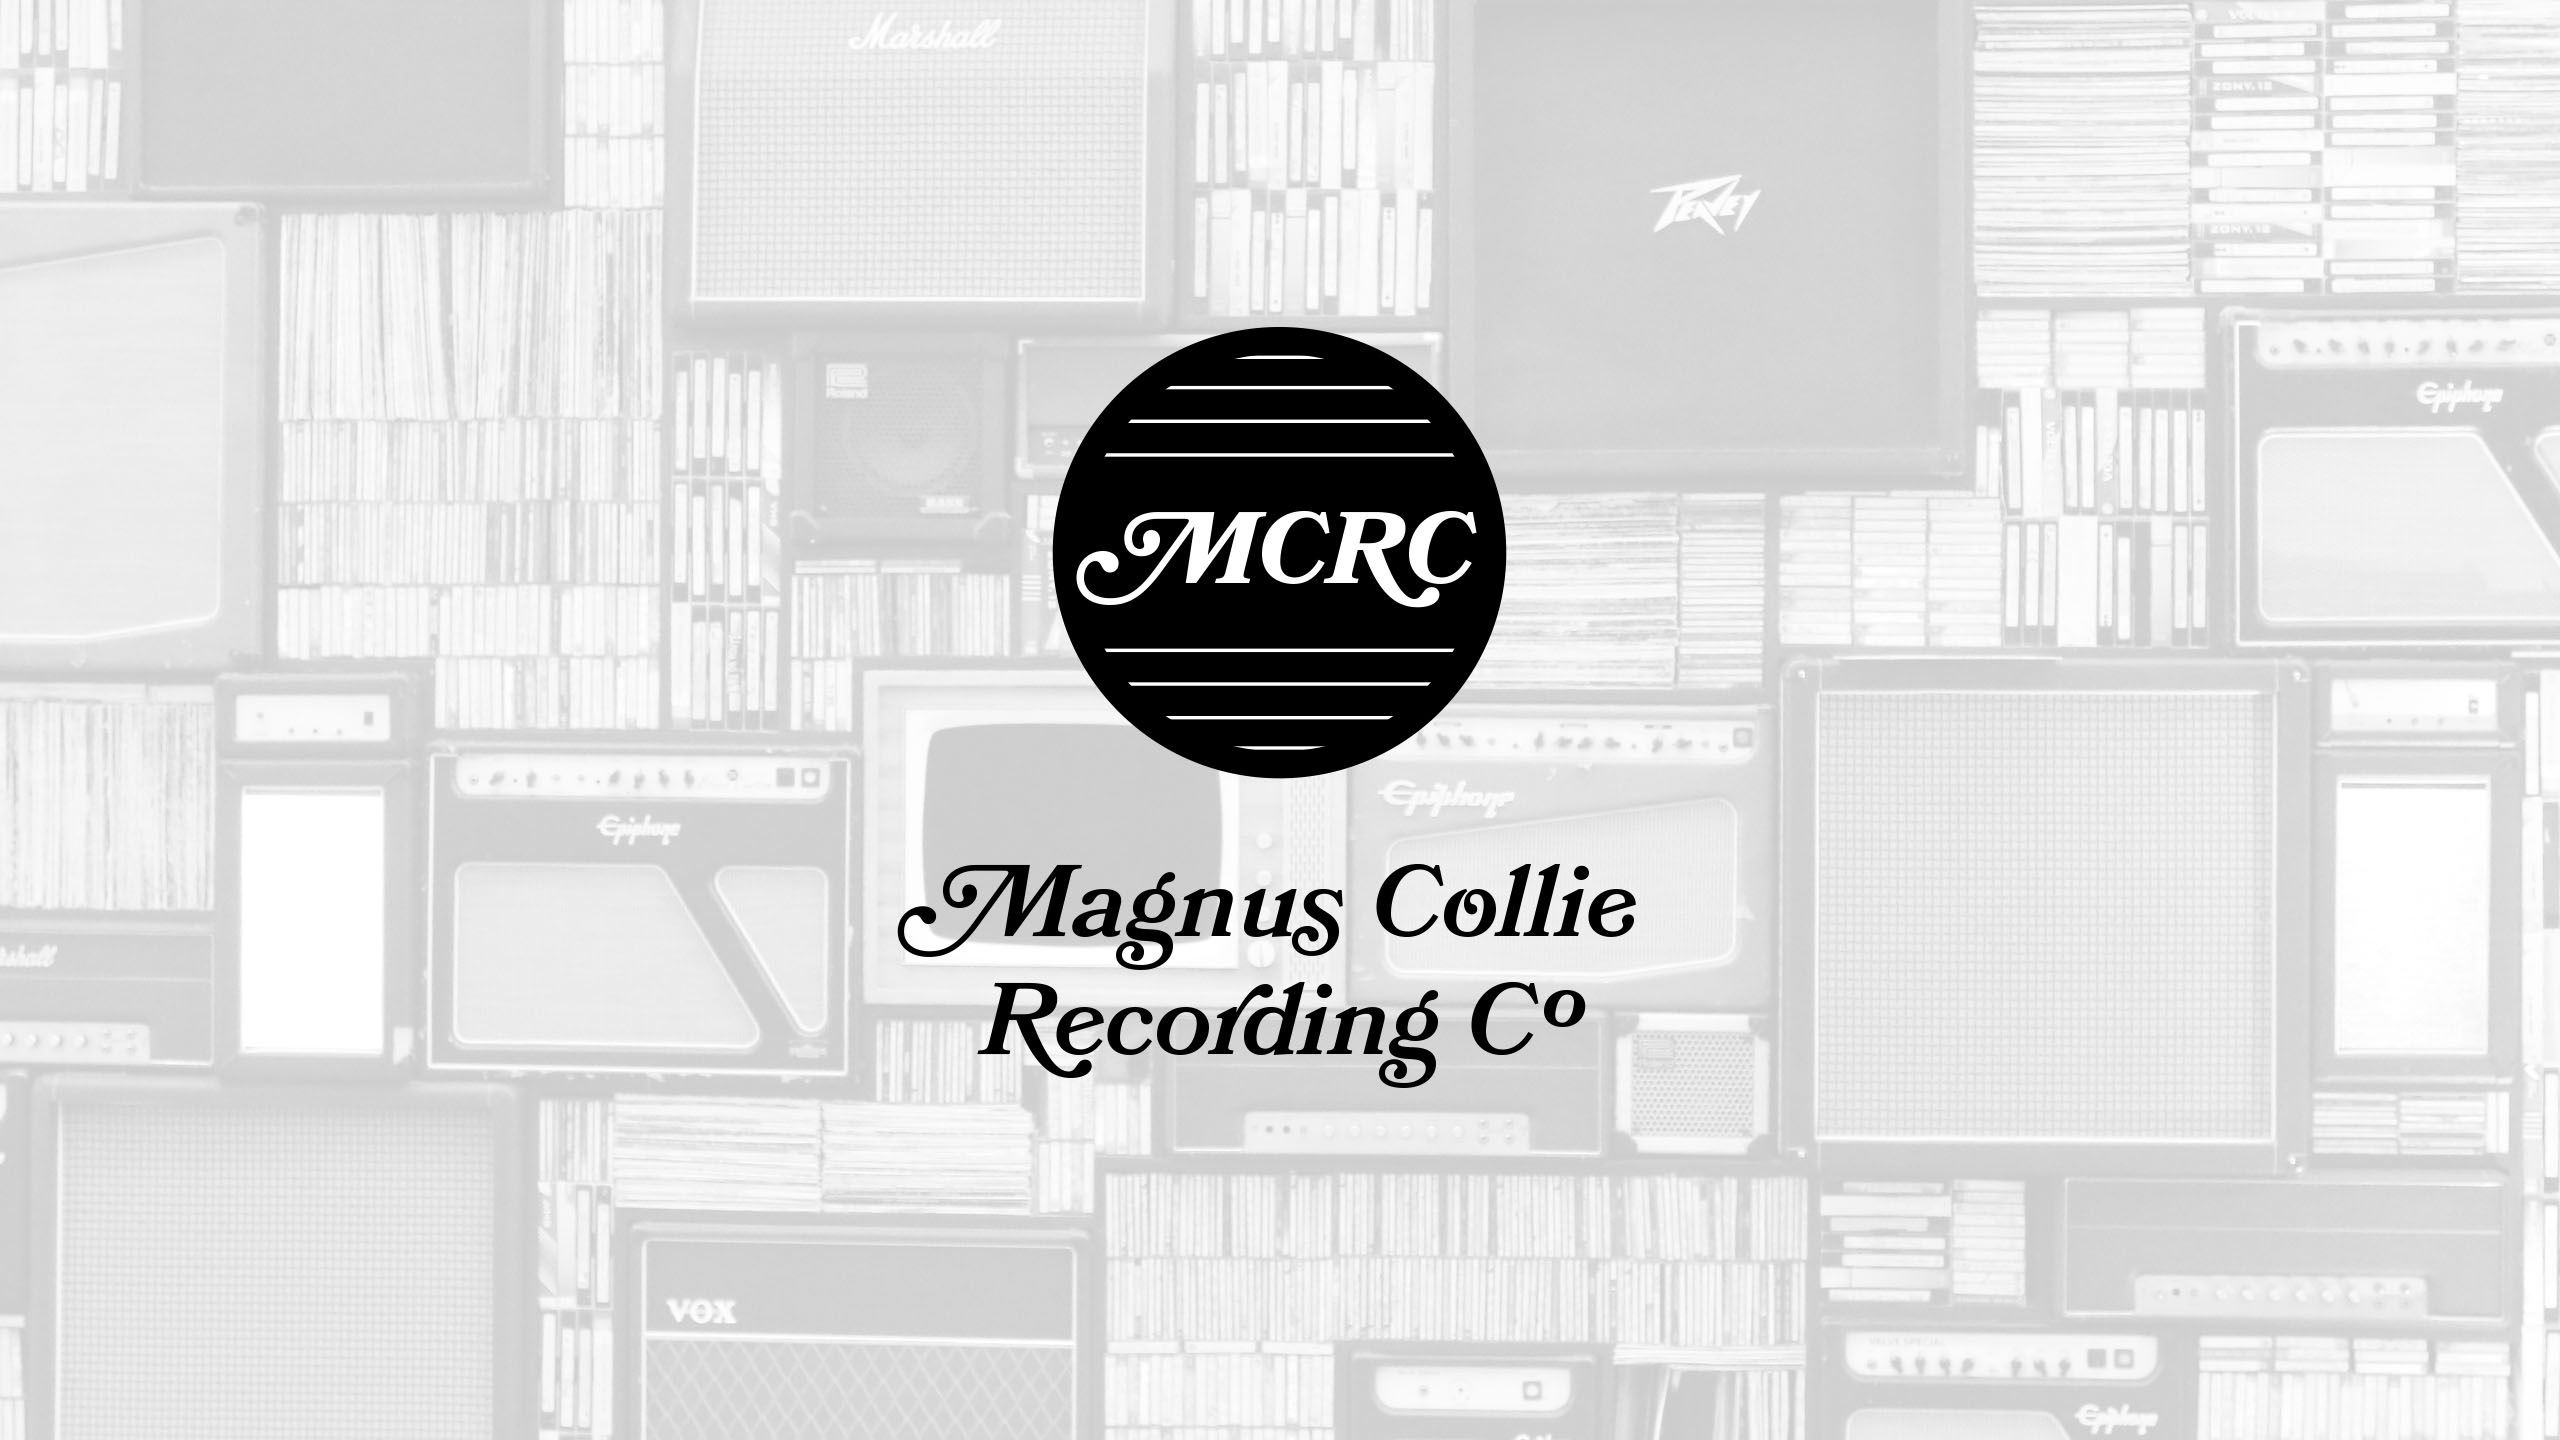 Magnus Collie Recording Co.